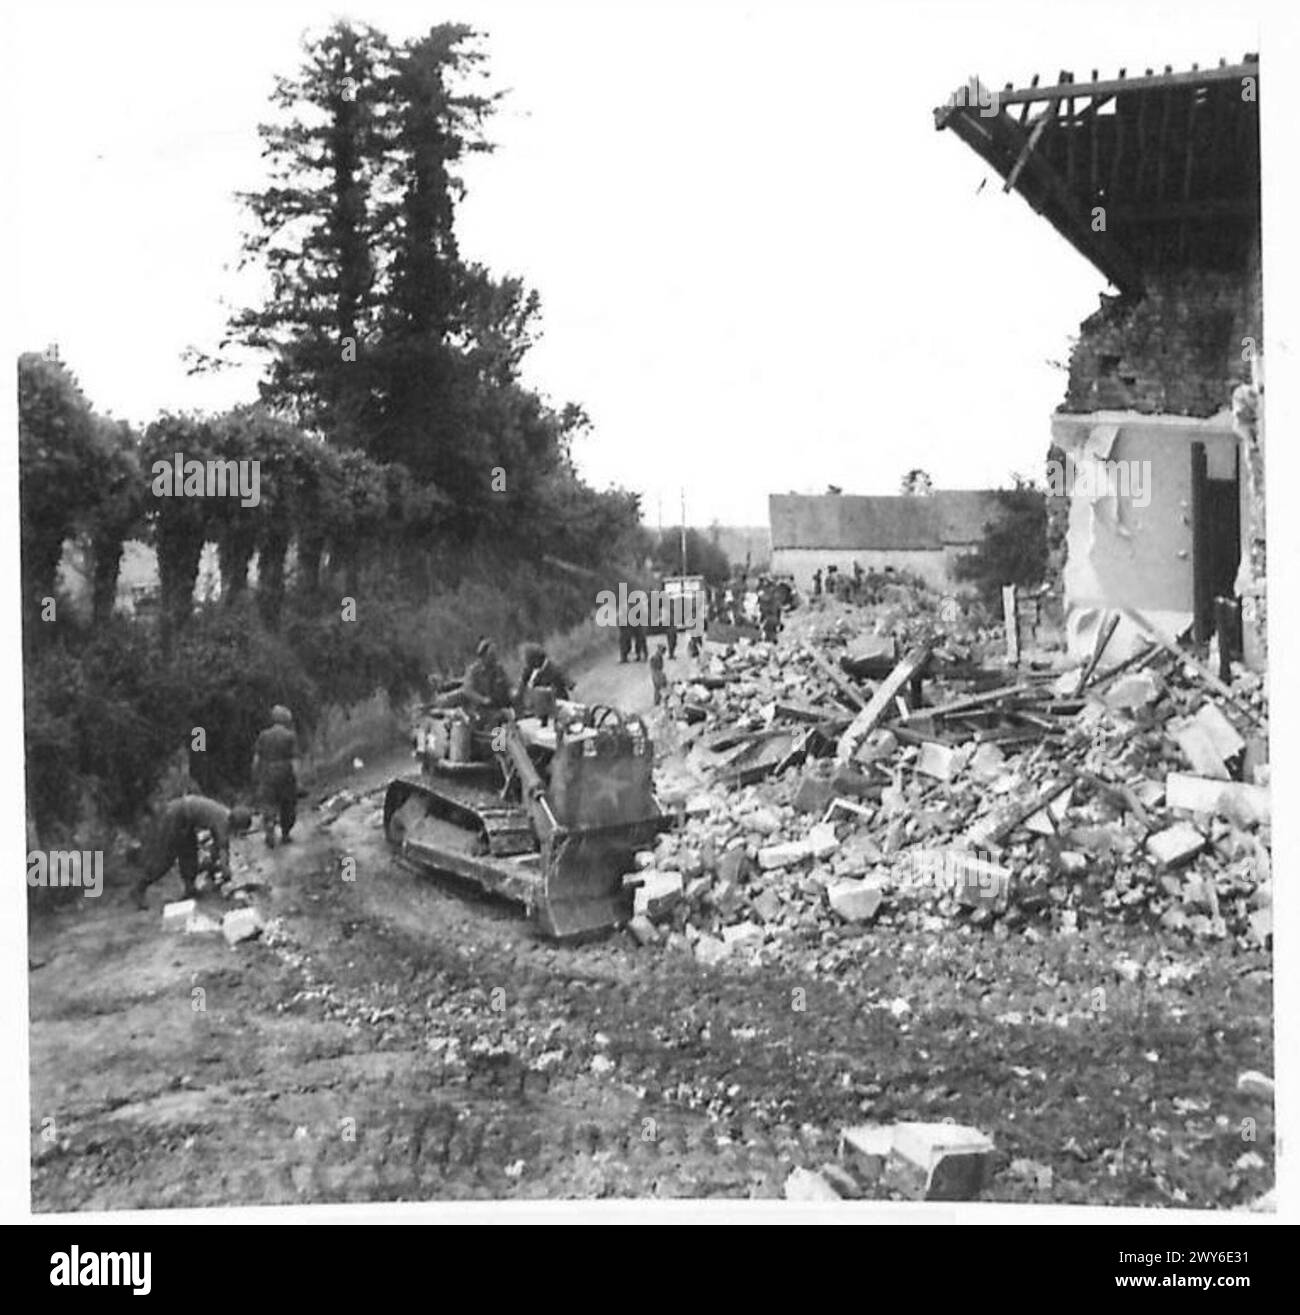 BULLDOZER BESEITIGEN HINDERNISSE – der Bulldozer stürzt als Nächstes in das Gebäude, um die Reste der noch stehenden Wände niederzuschlagen und die Trümmer dann zu entfernen. Britische Armee, 21. Armeegruppe Stockfoto